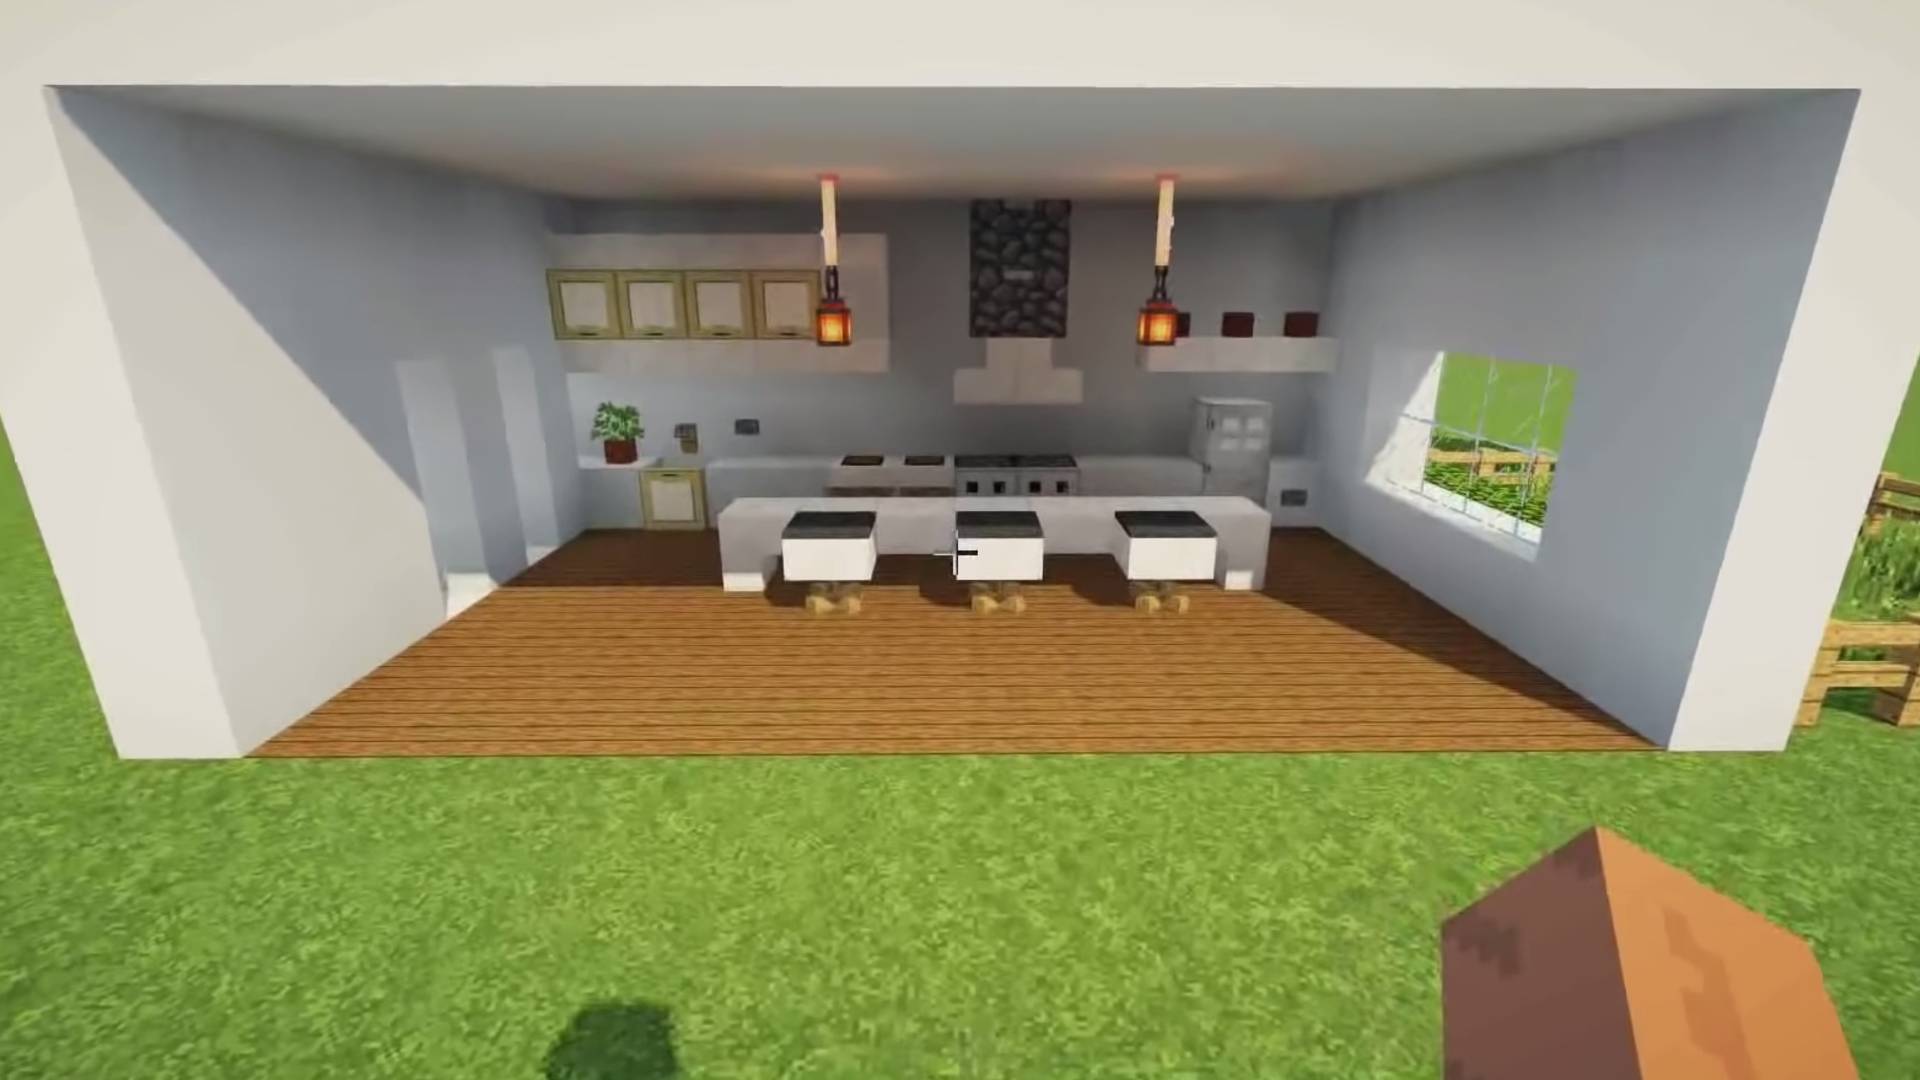  kitchen design in minecraft